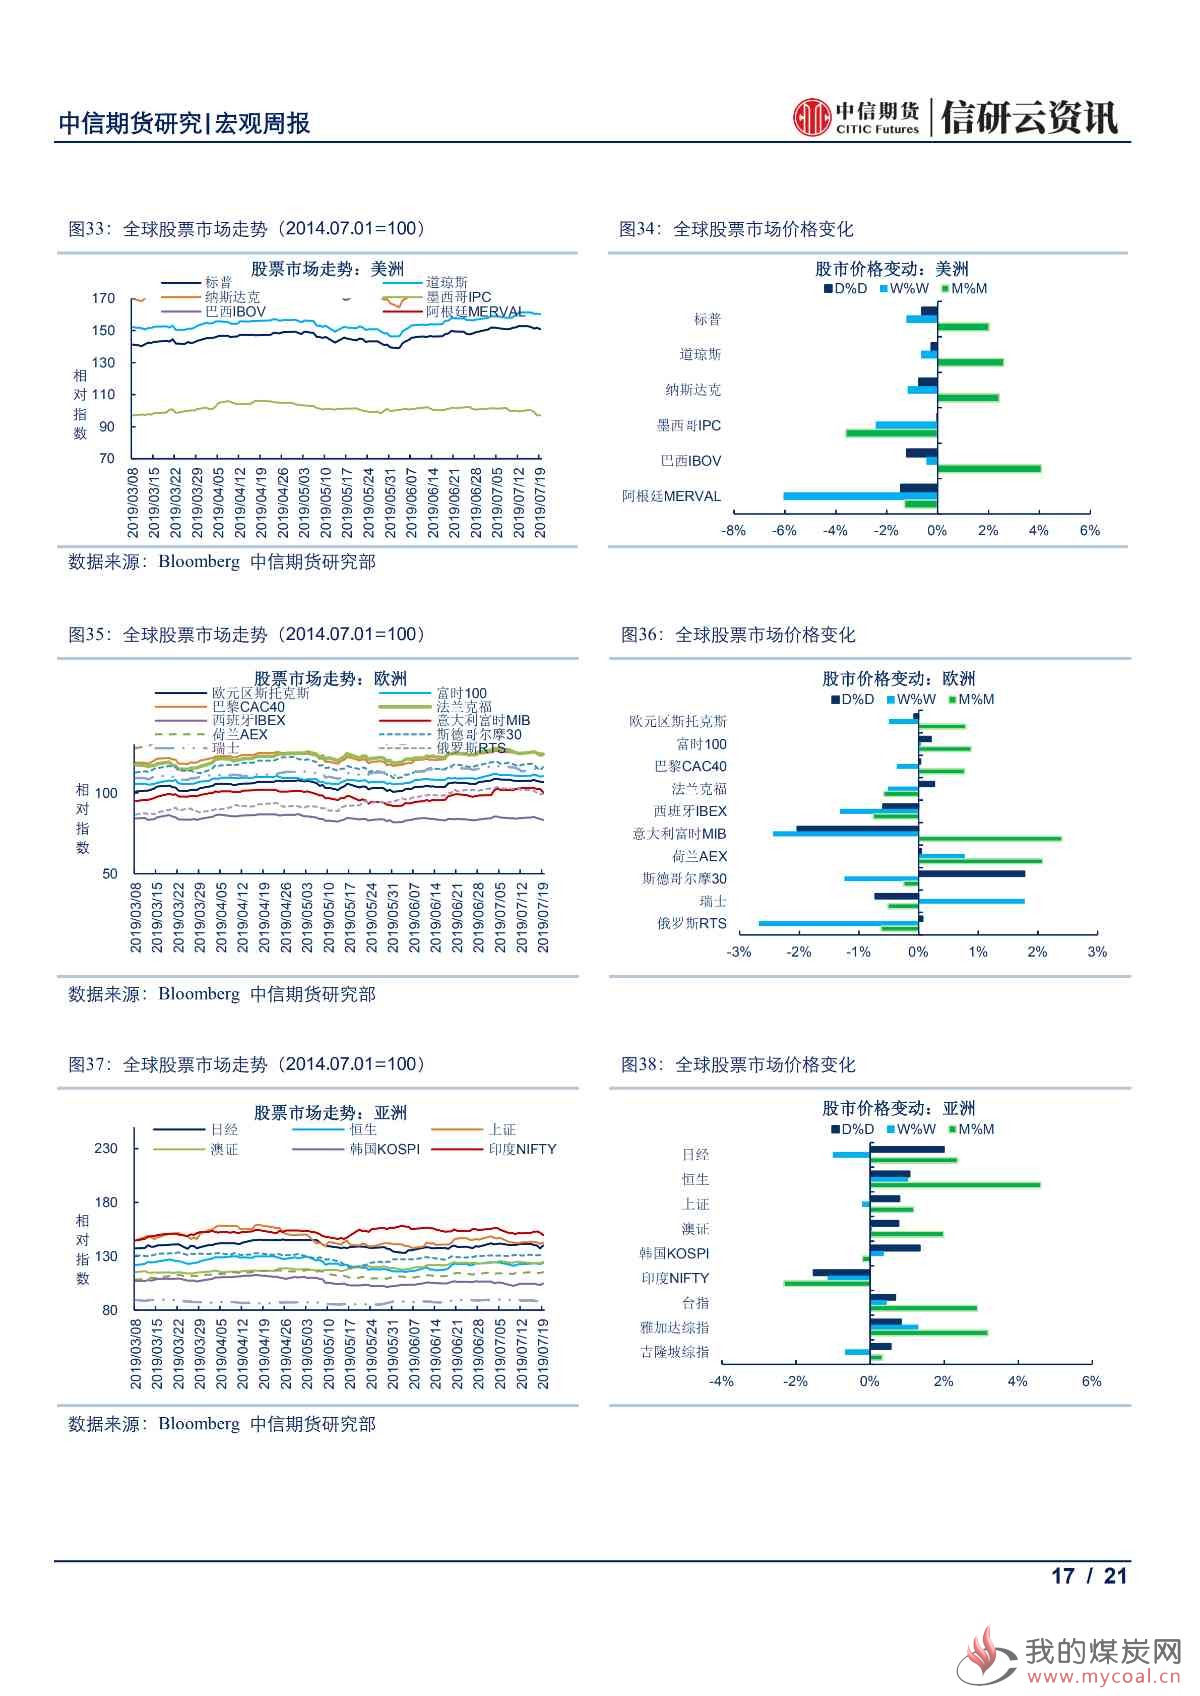 【中信期货宏观】中国上半年经济结构持续改善 欧美央行鸽派倾向愈发明显——周报20190722_16